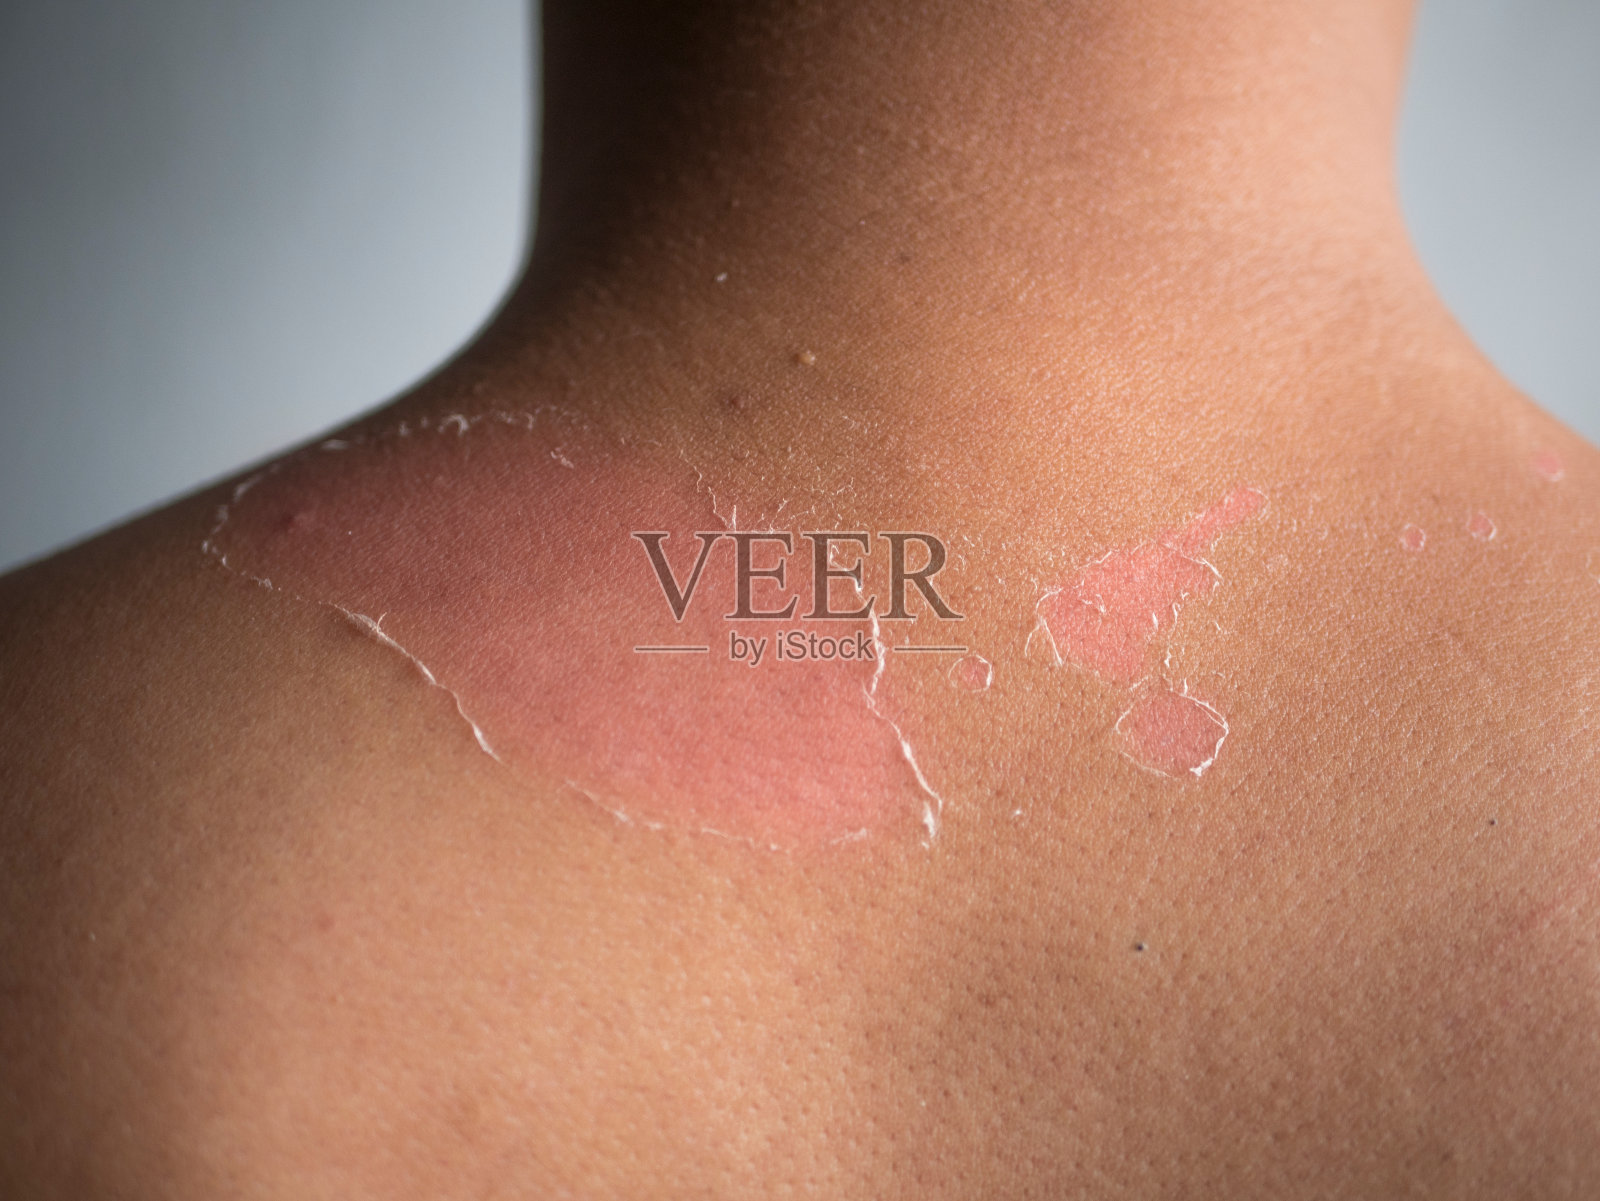 年轻人夏季晒伤后背部和肩部皮肤脱皮。危险的晒伤的概念照片摄影图片